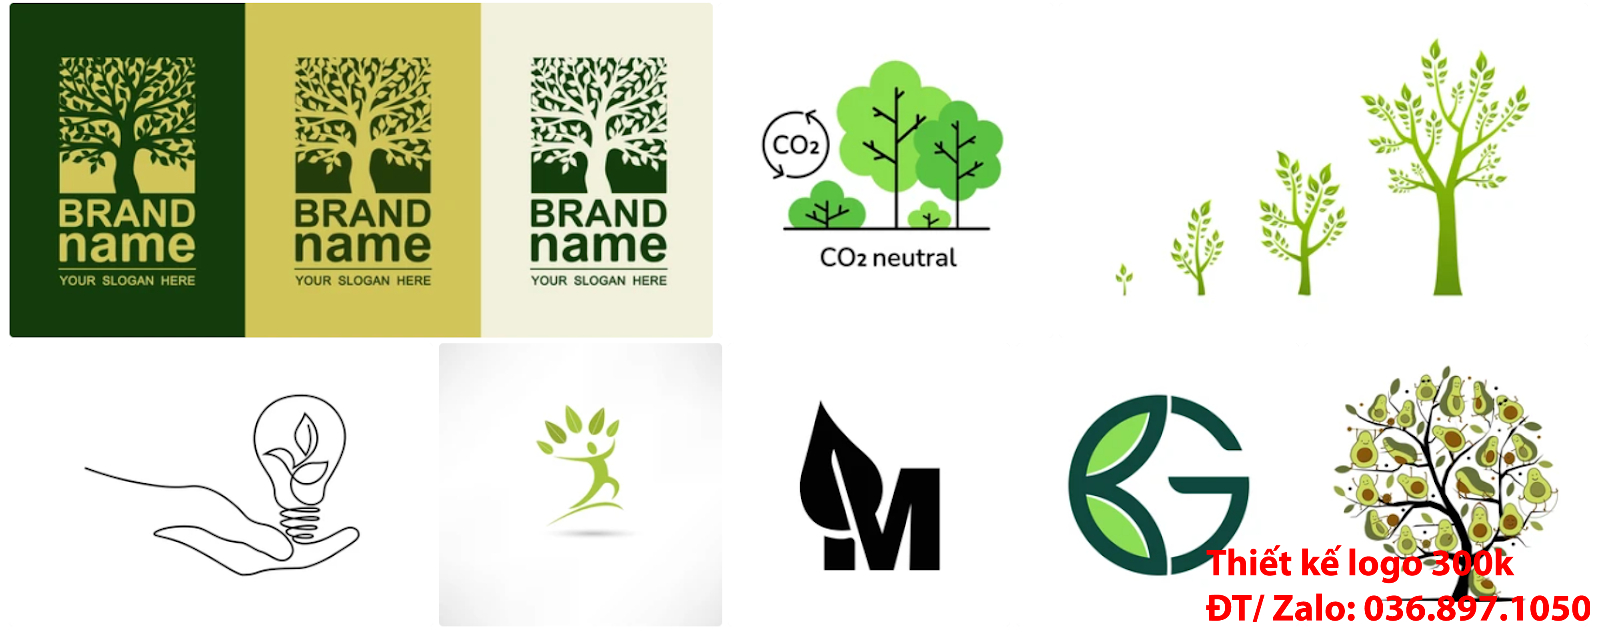 mẫu logo cây xanh chuyên nghiệp chất lượng giá 500k tại Sài Gòn